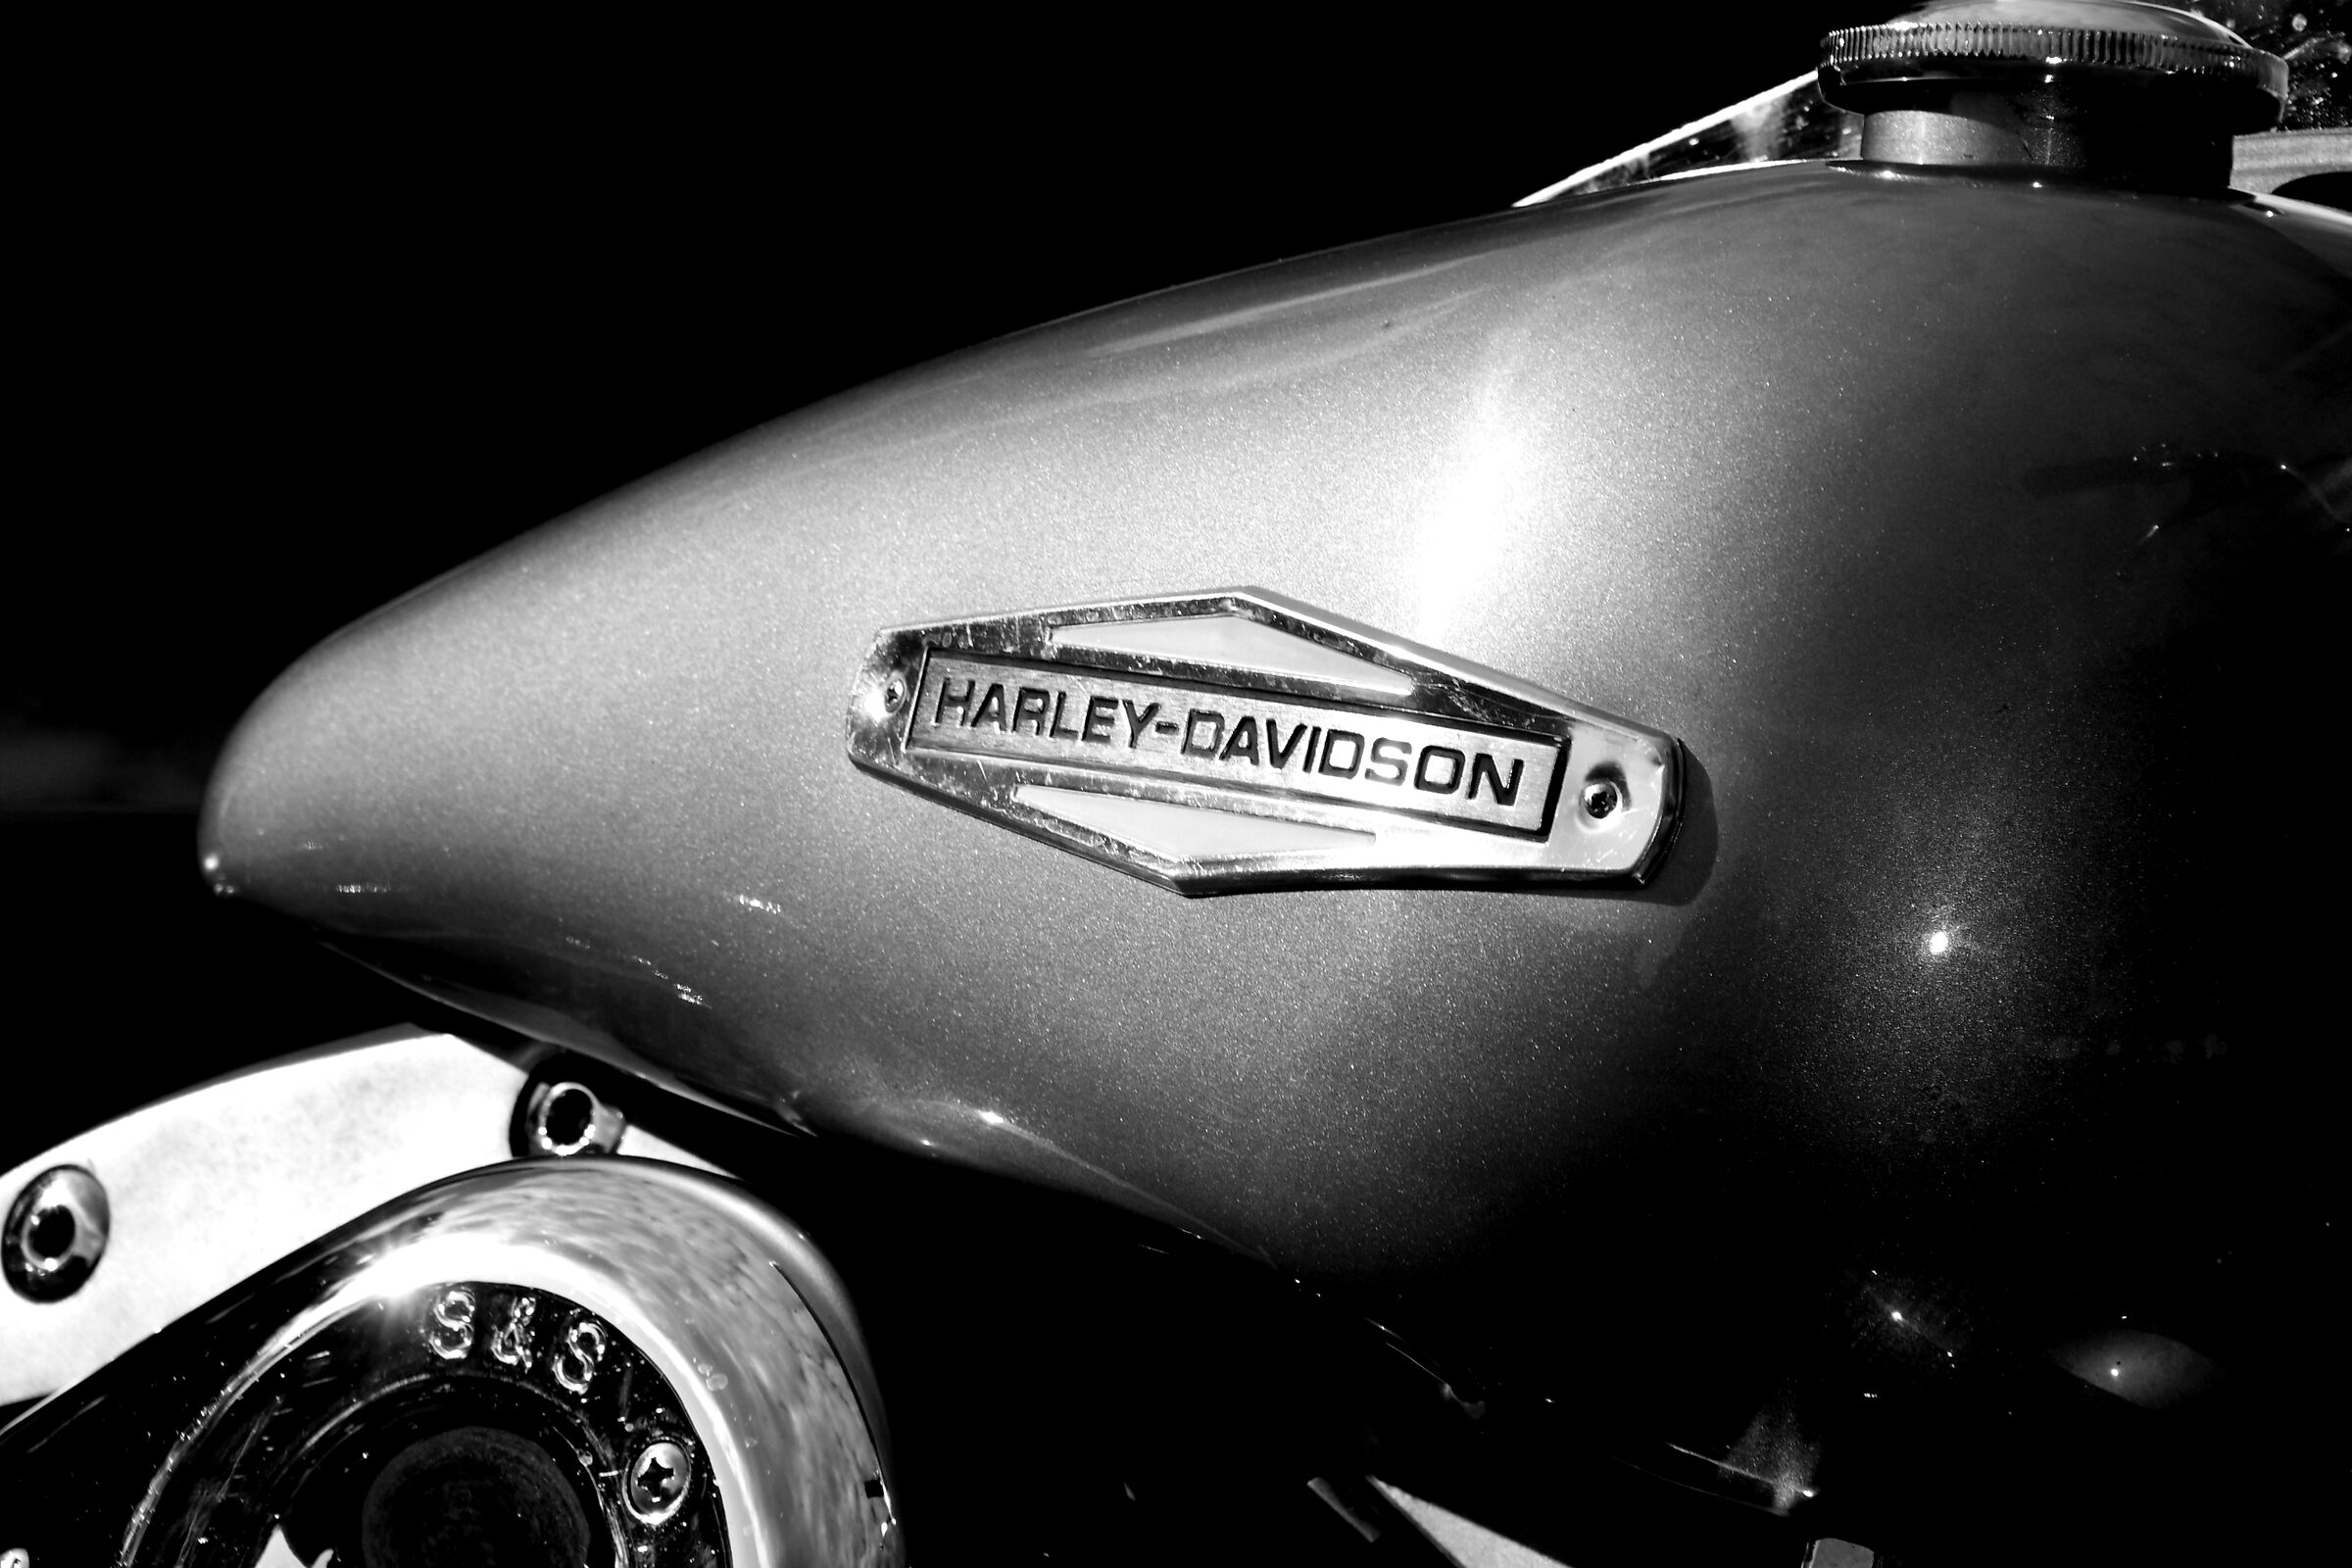 Rock'n Road 2019 - Harley tank...